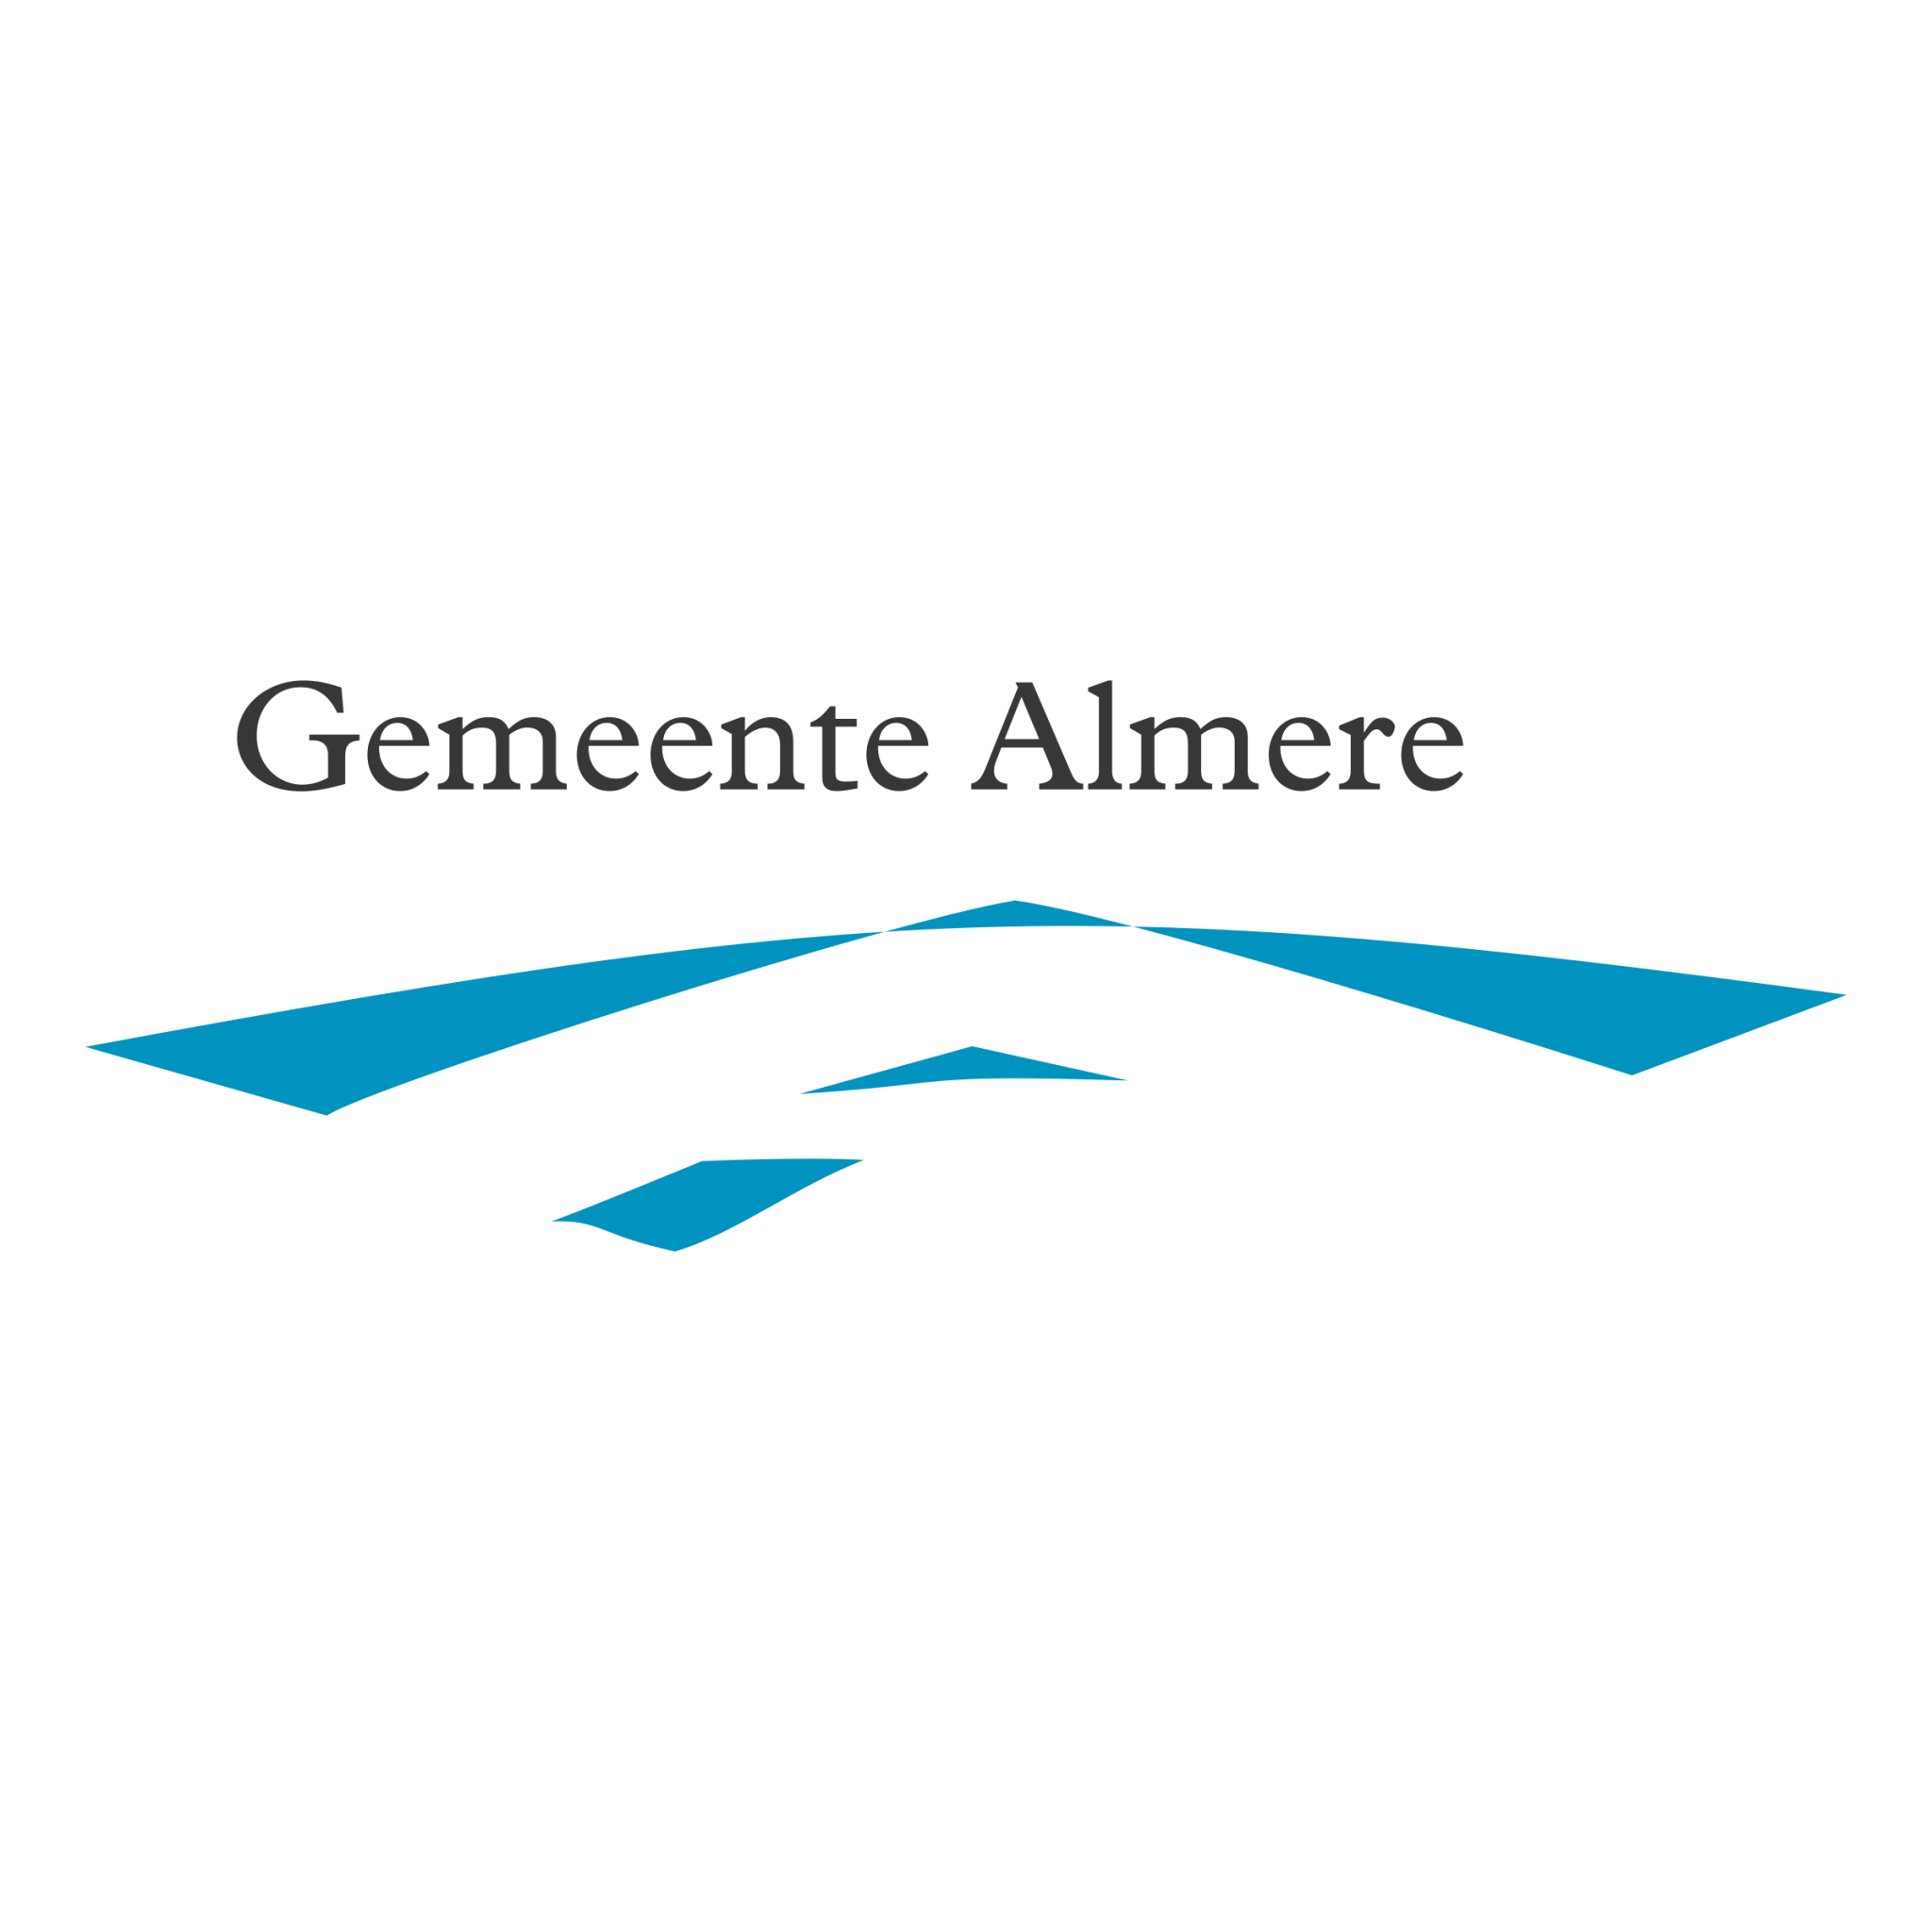 gemeente-almere-1-logo-png-transparent